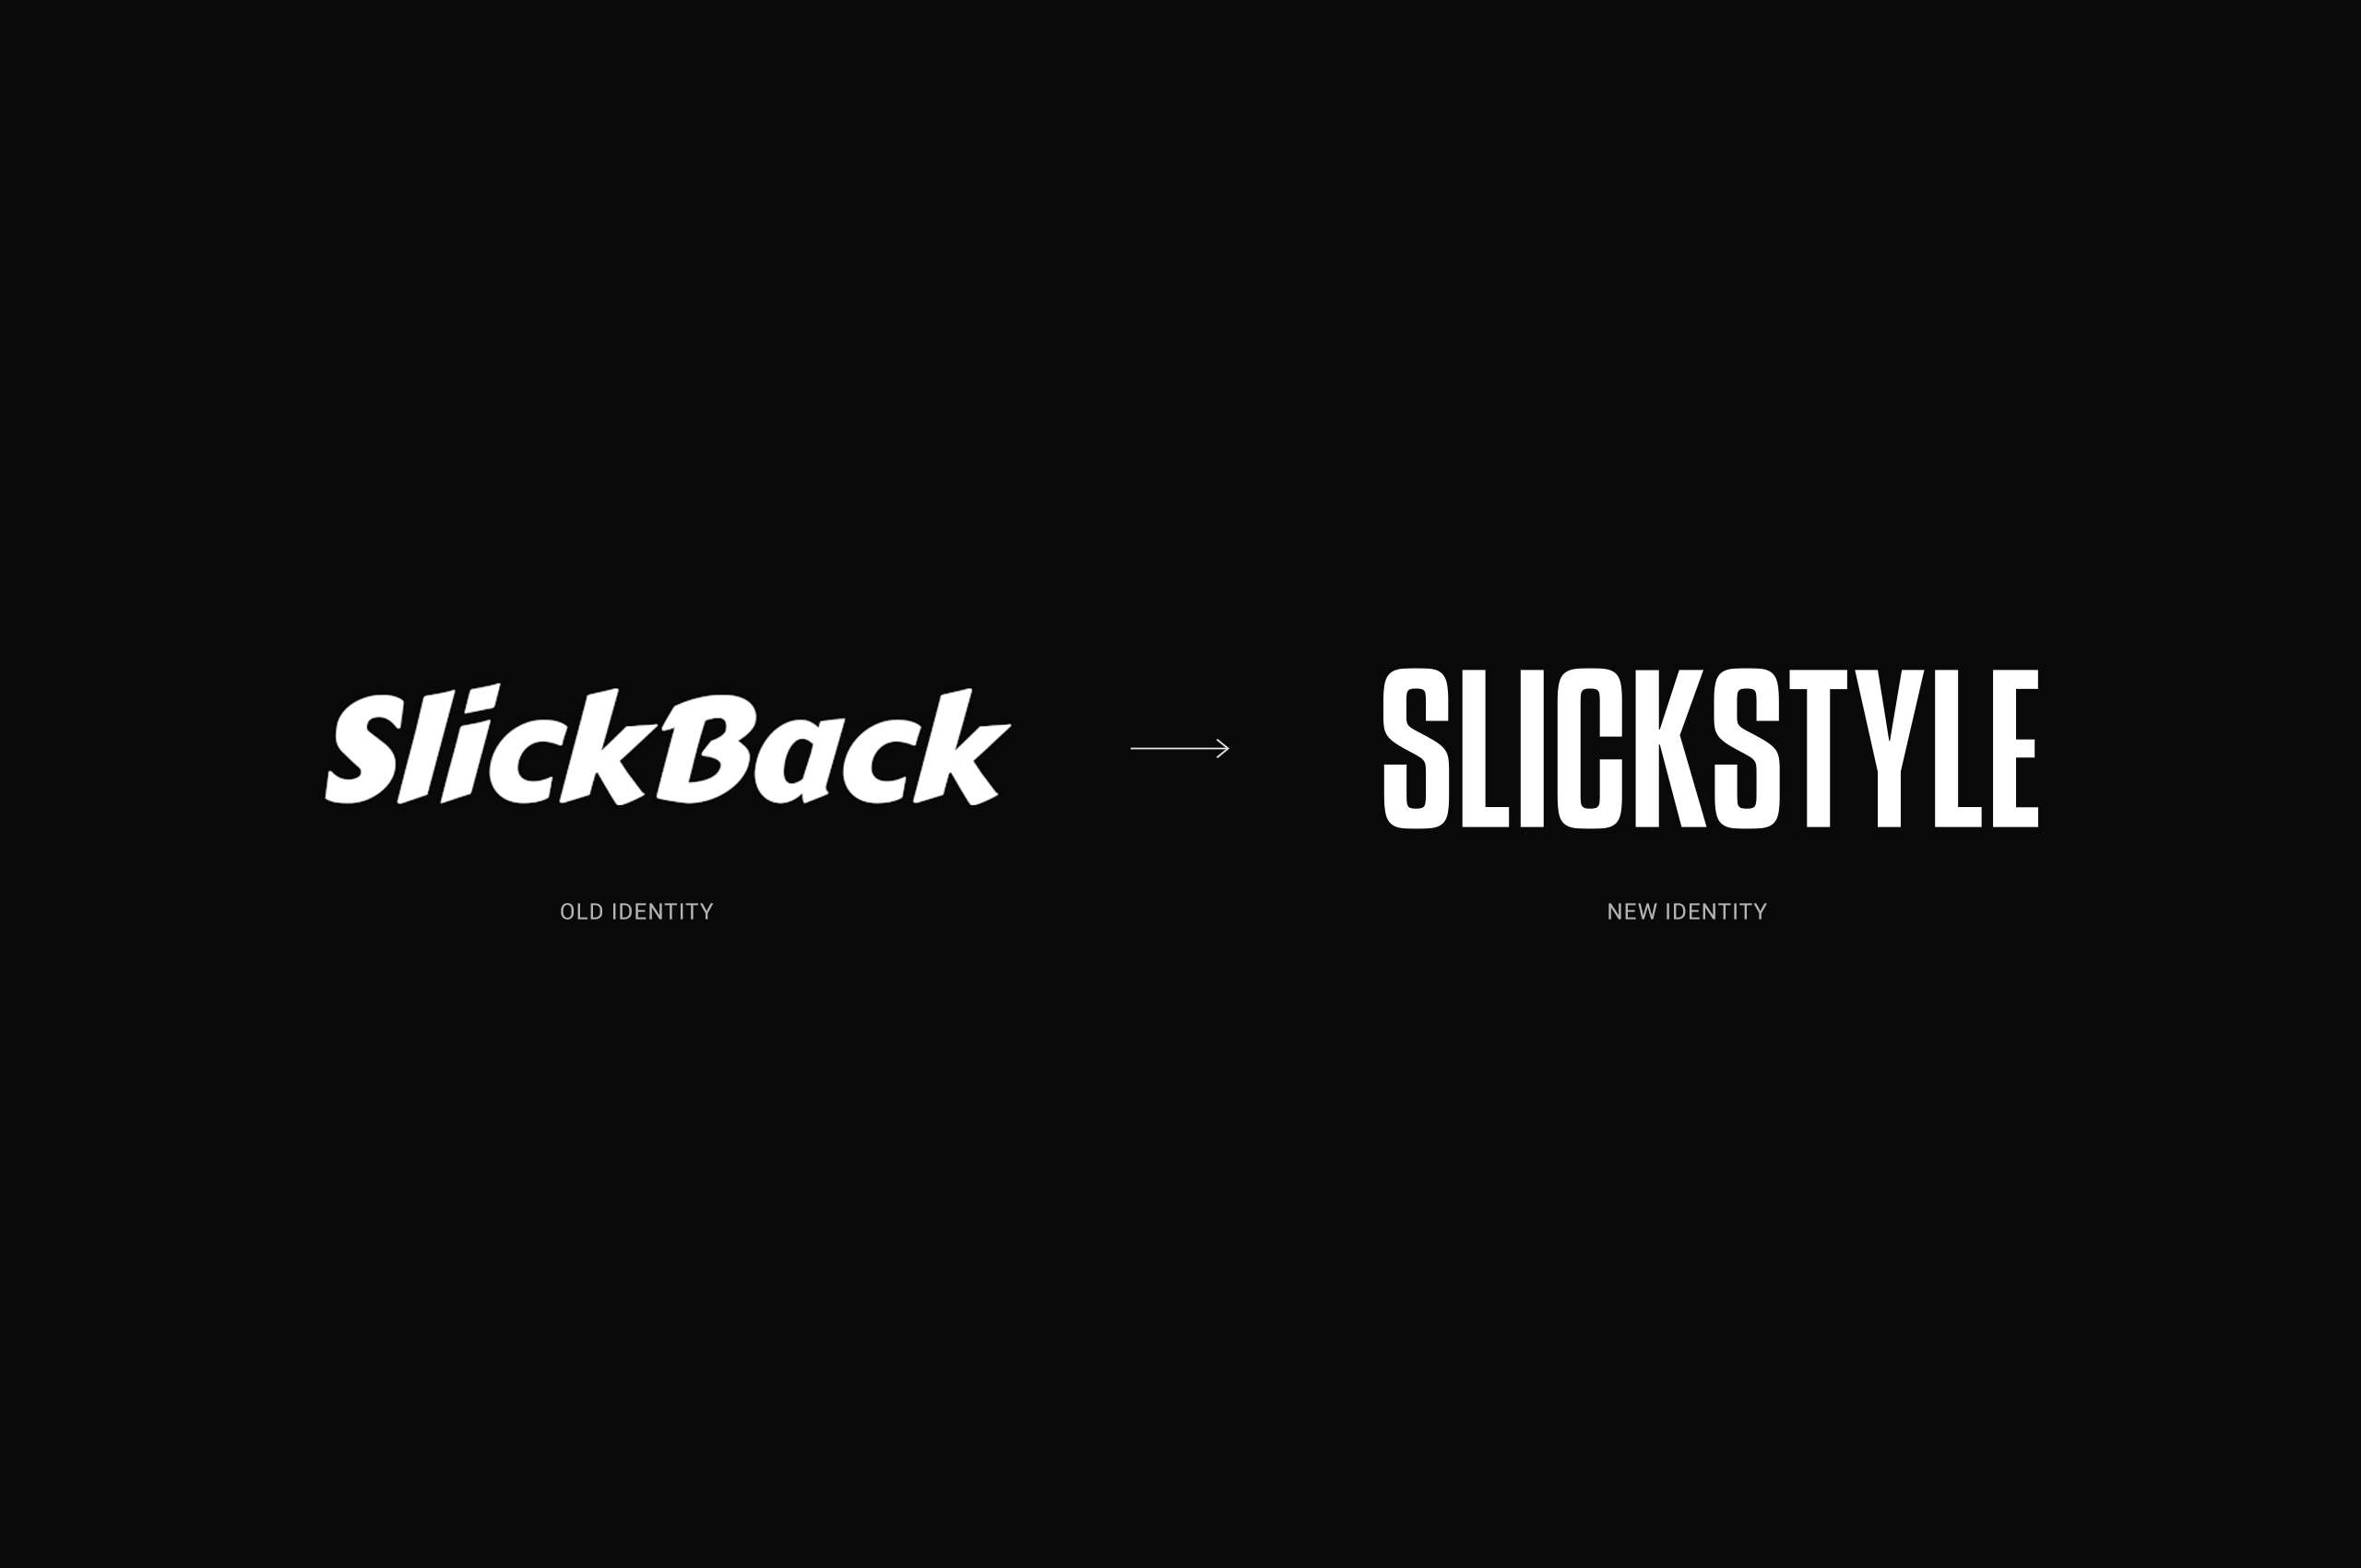 slickstyle-export-2021-1-V2